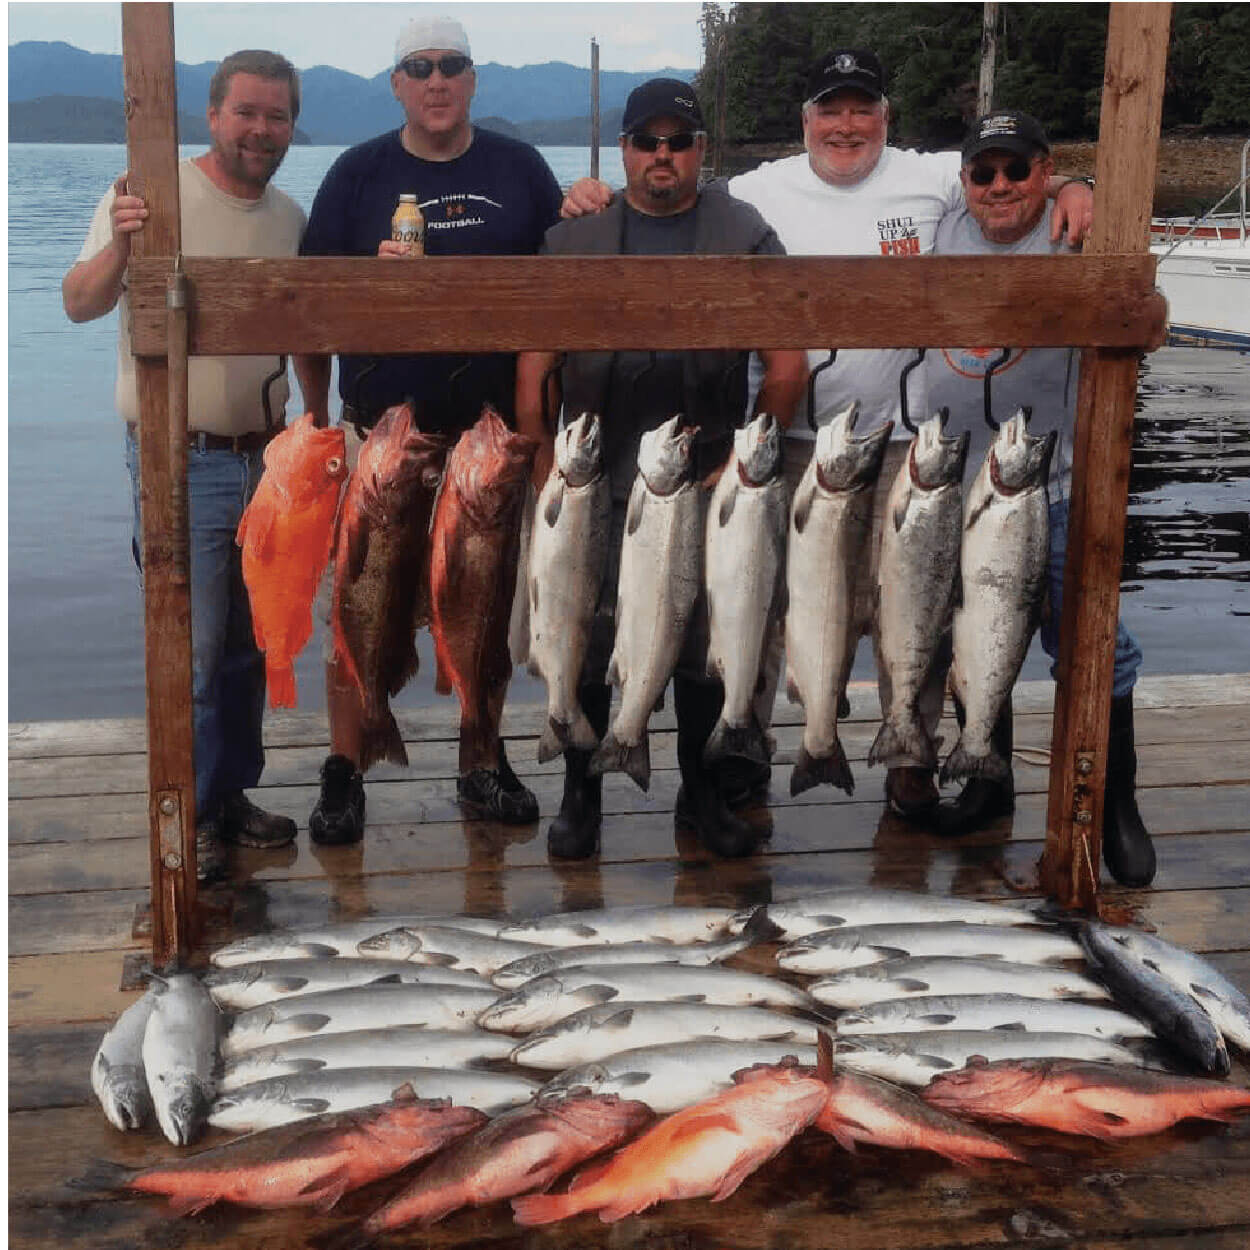 Ketchikan Charter Fishing Trips Alaskan Fishing Charter Info & Pricing